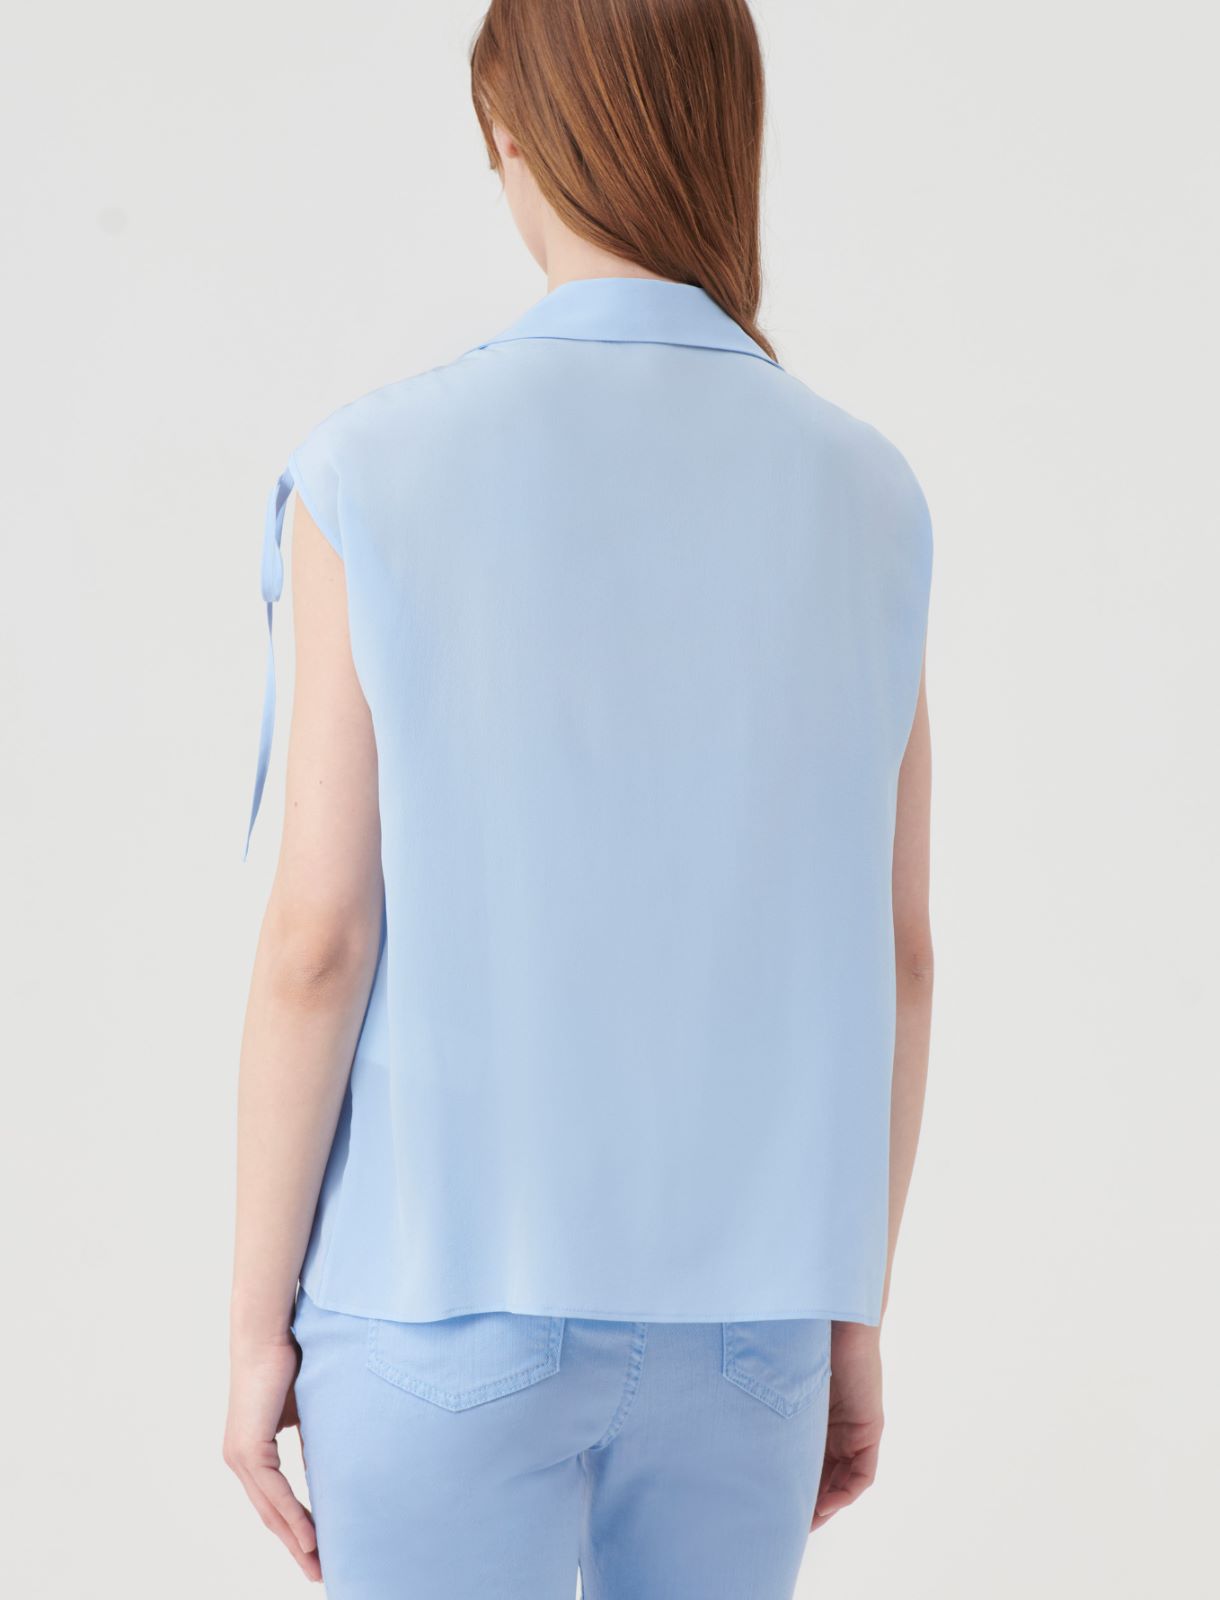 Silk shirt - Light blue - Marella - 2